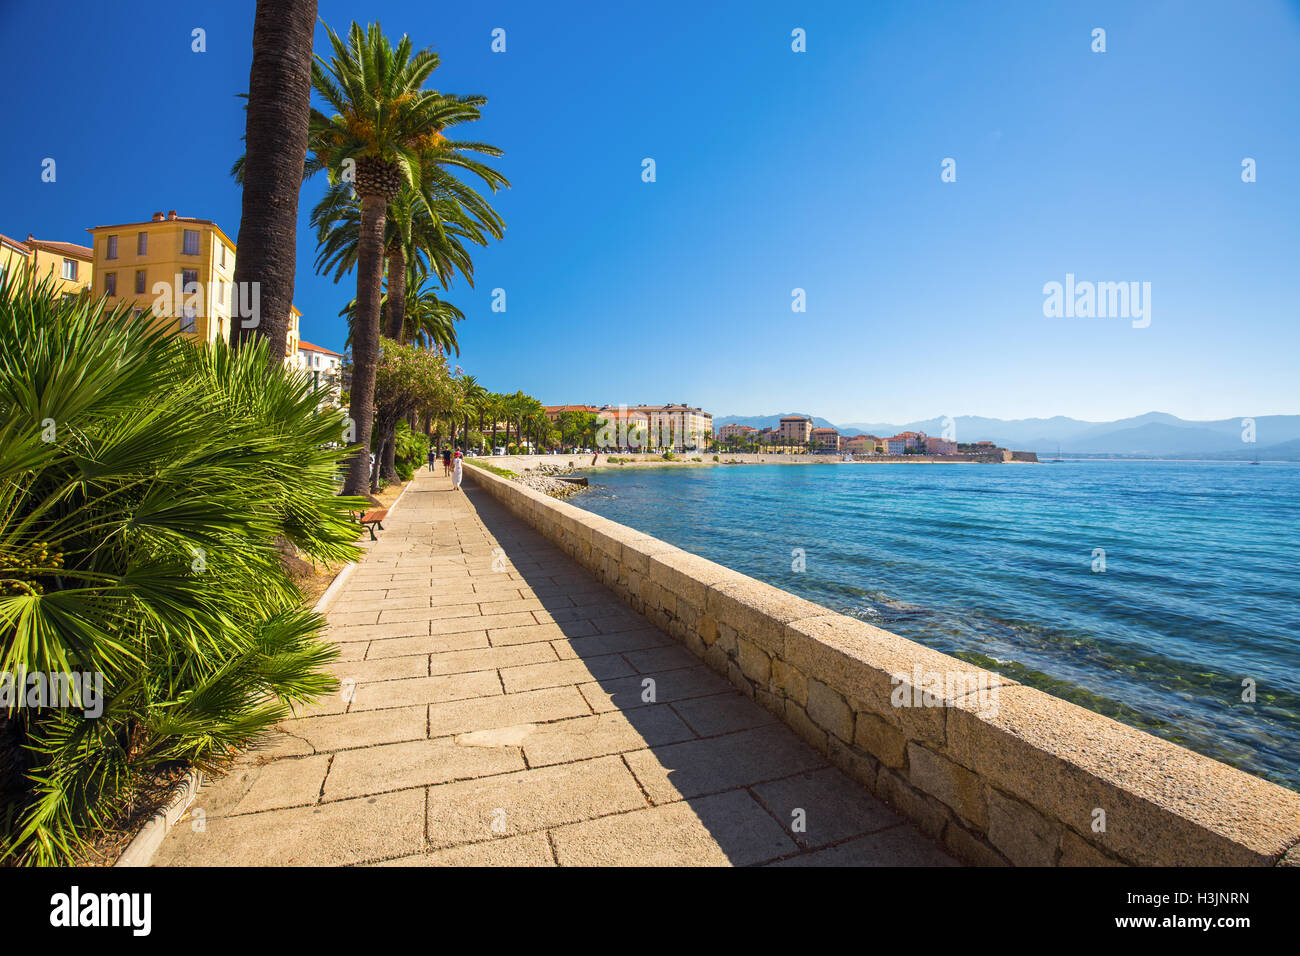 Le vieux centre-ville d'Ajaccio ville côtière avec des palmiers et de vieilles maisons typiques, Corse, France, Europe. Banque D'Images